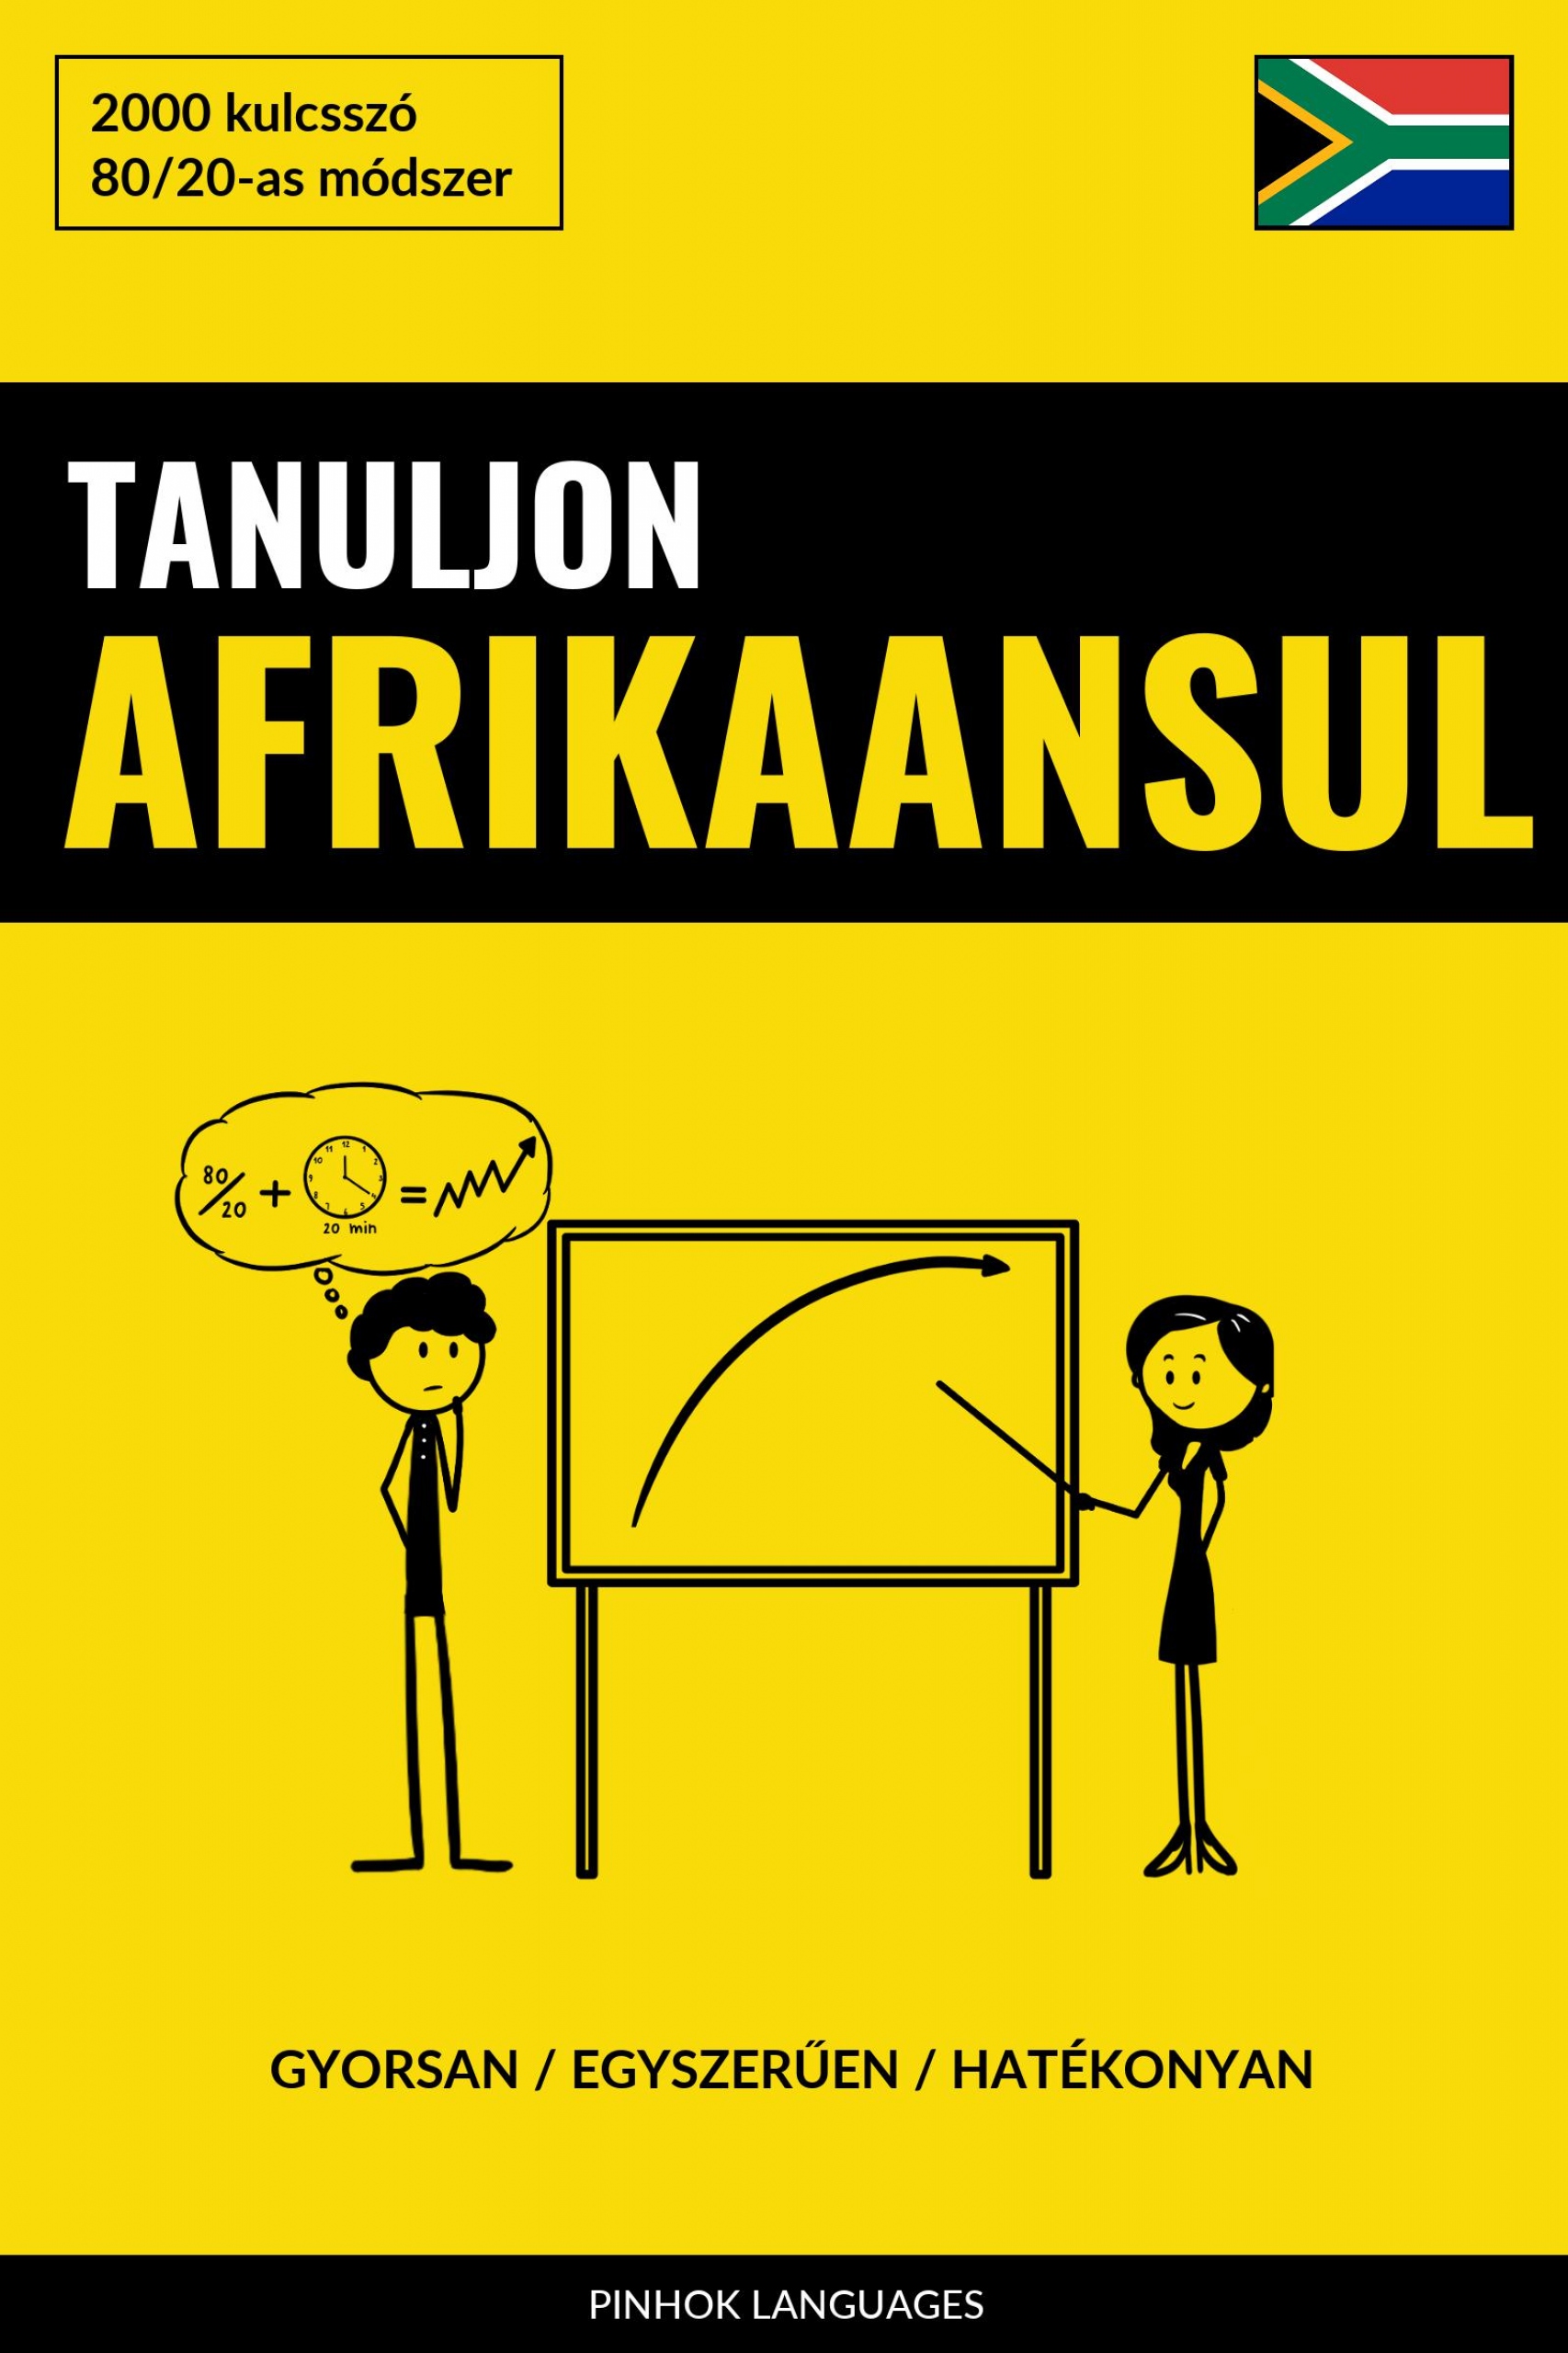 Tanuljon Afrikaansul